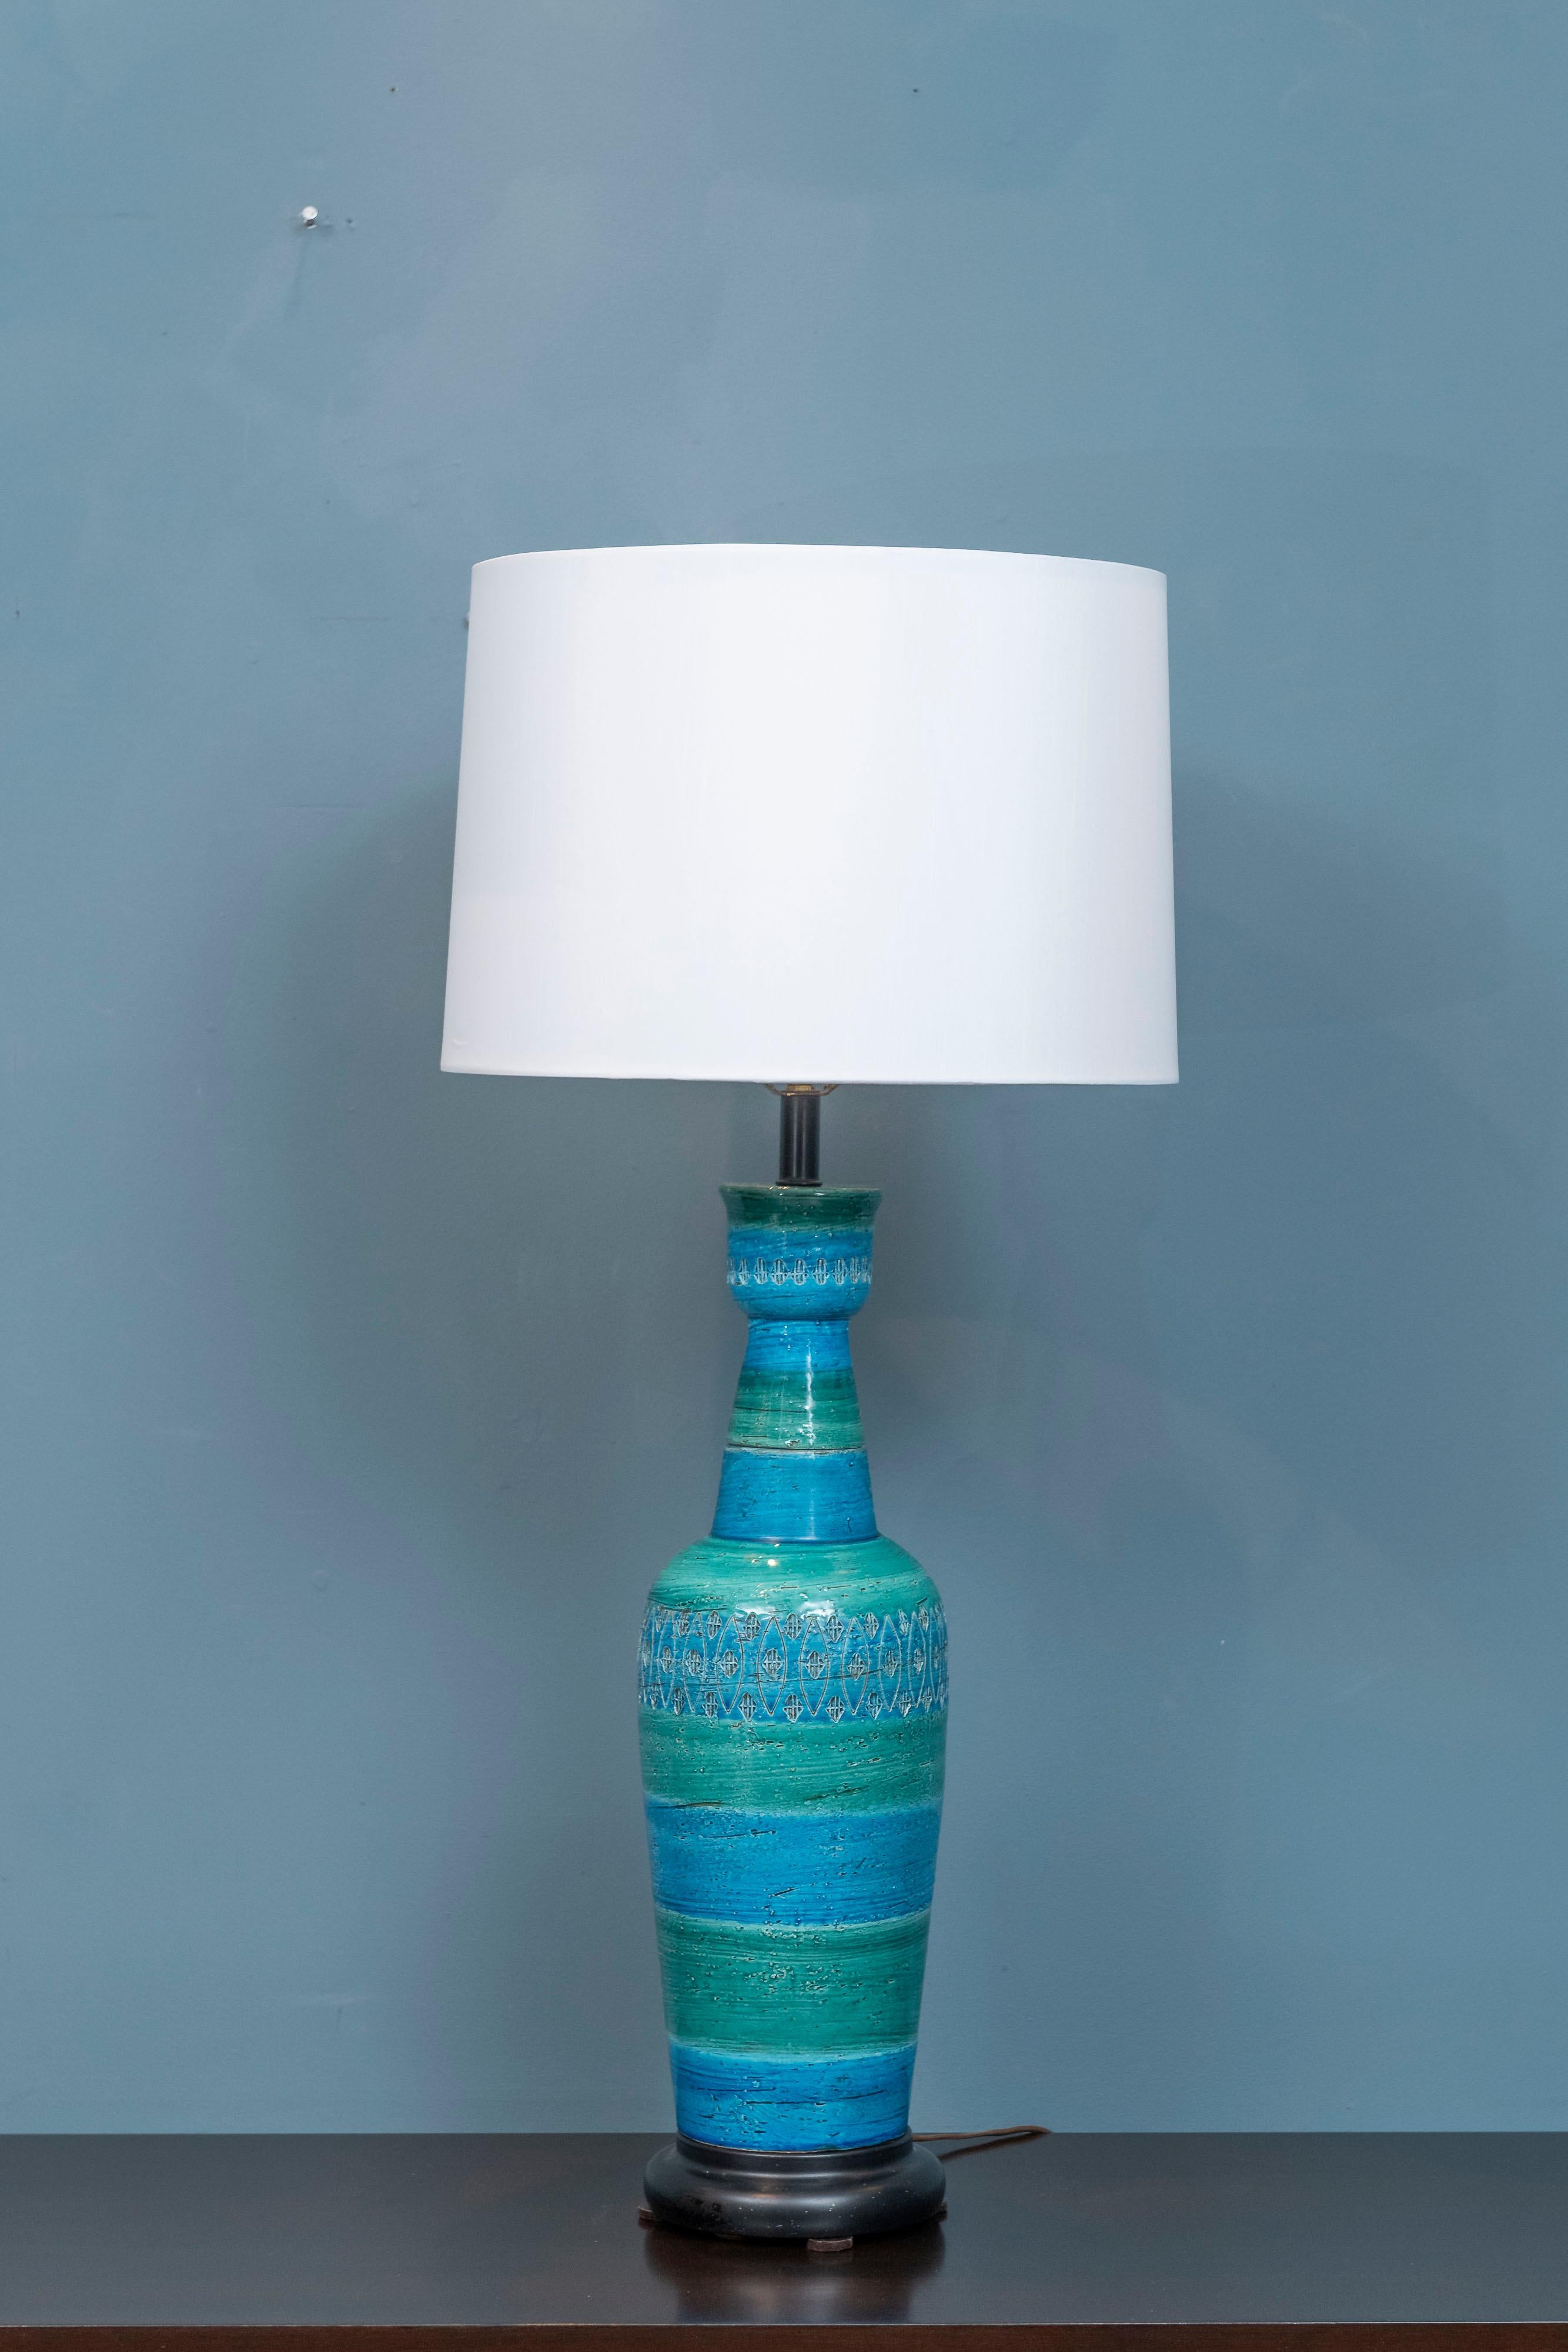 Lampe en céramique de Bitossi Aldo Londi avec décoration encastrée au centre et sur le dessus dans les couleurs bleu Rimini et vert océan. La carrosserie de forme classique, impressionnante en personne, est en très bon état d'origine. La base de la